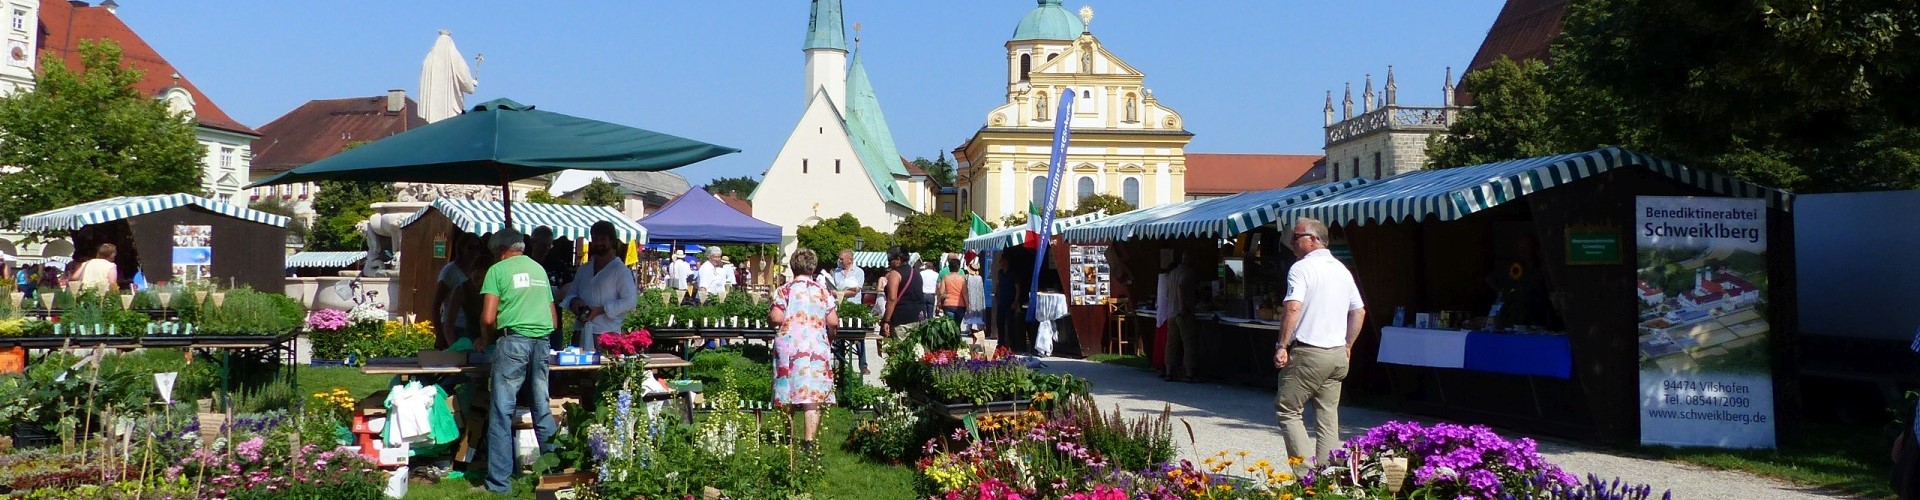 Der Altöttinger Klostermarkt 2015 mit Ständen, verschiedenen Blumen und Kräutern.